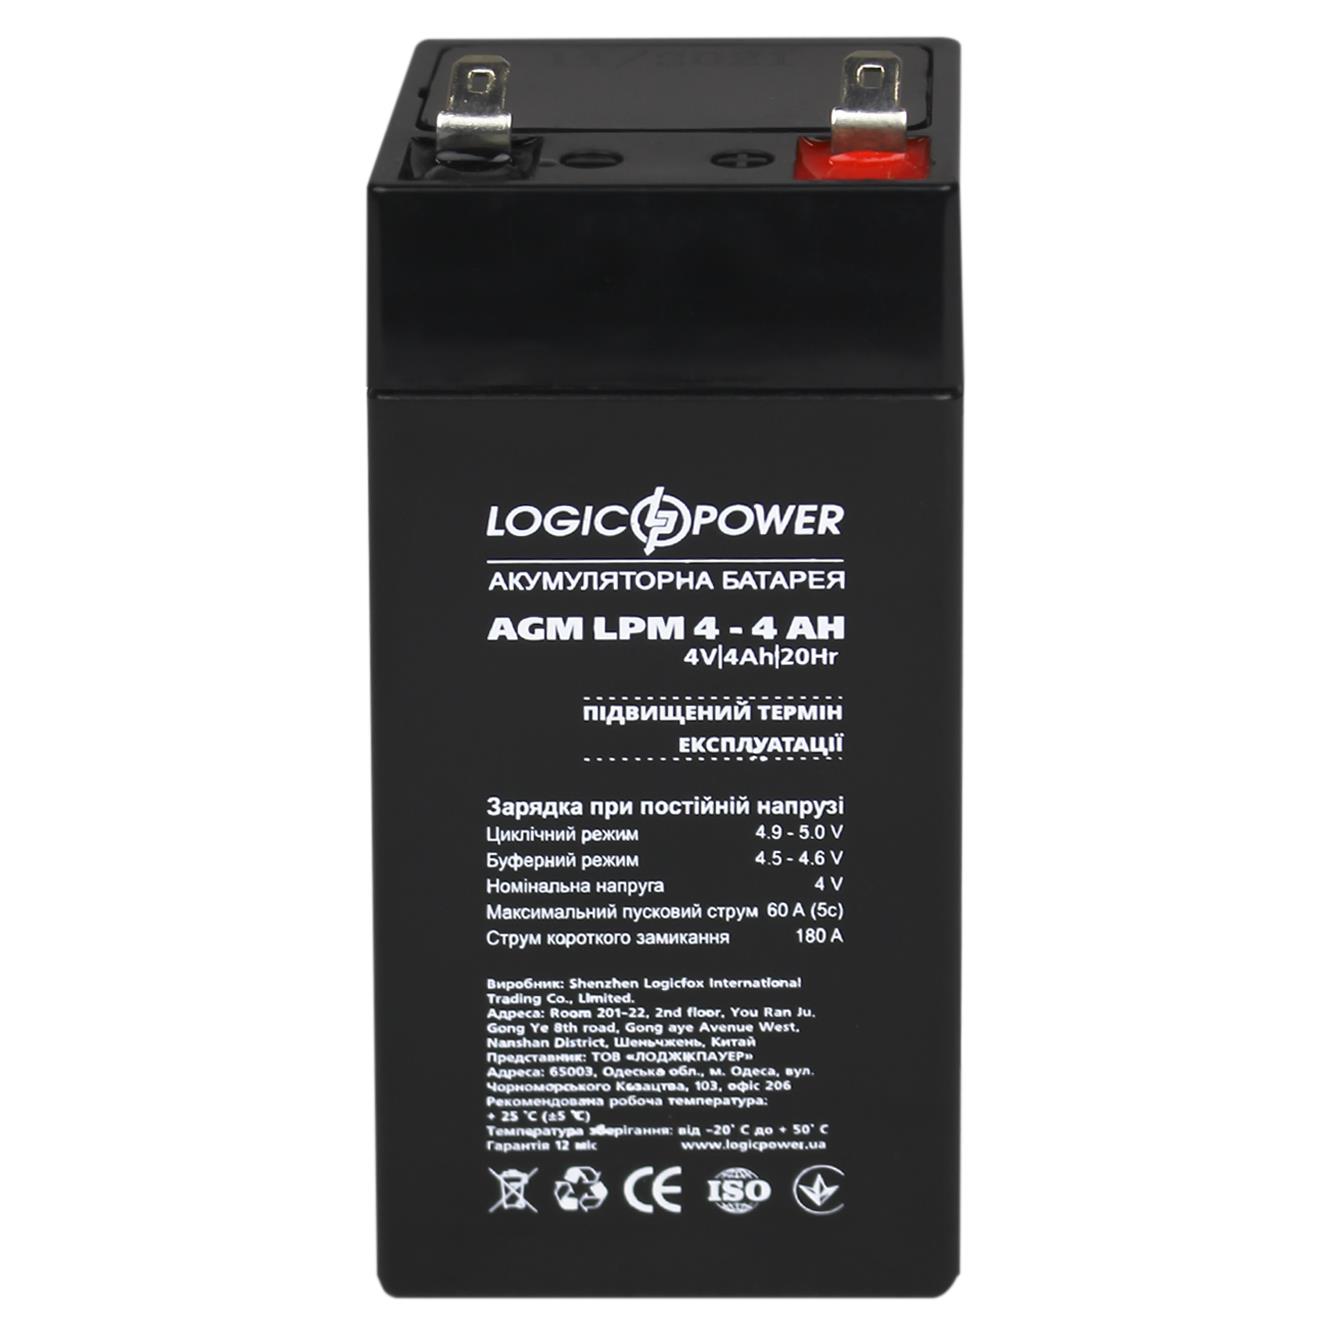 Аккумулятор свинцово-кислотный LogicPower AGM LPM 4V - 4 Ah (4135) отзывы - изображения 5